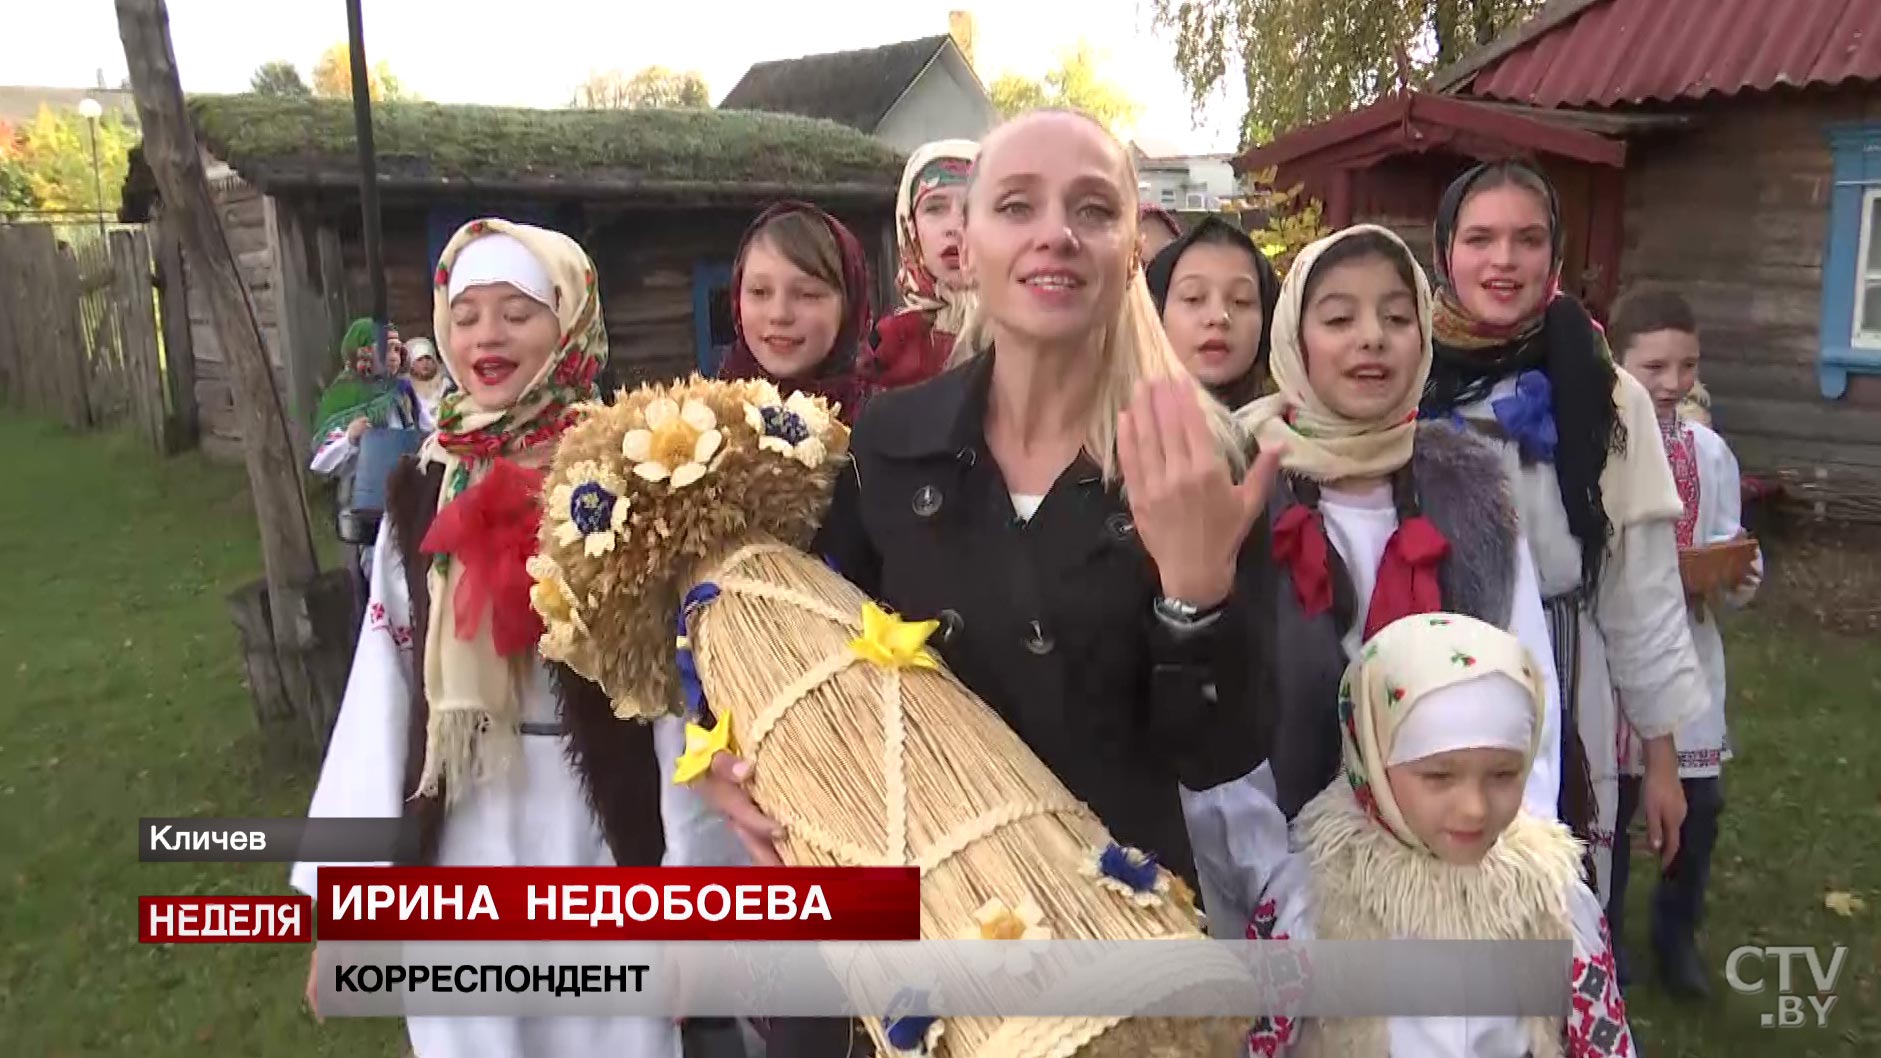 «Столичное телевидение» сняло репортаж о том, как в Кличеве возрождают белорусские культурные традиции